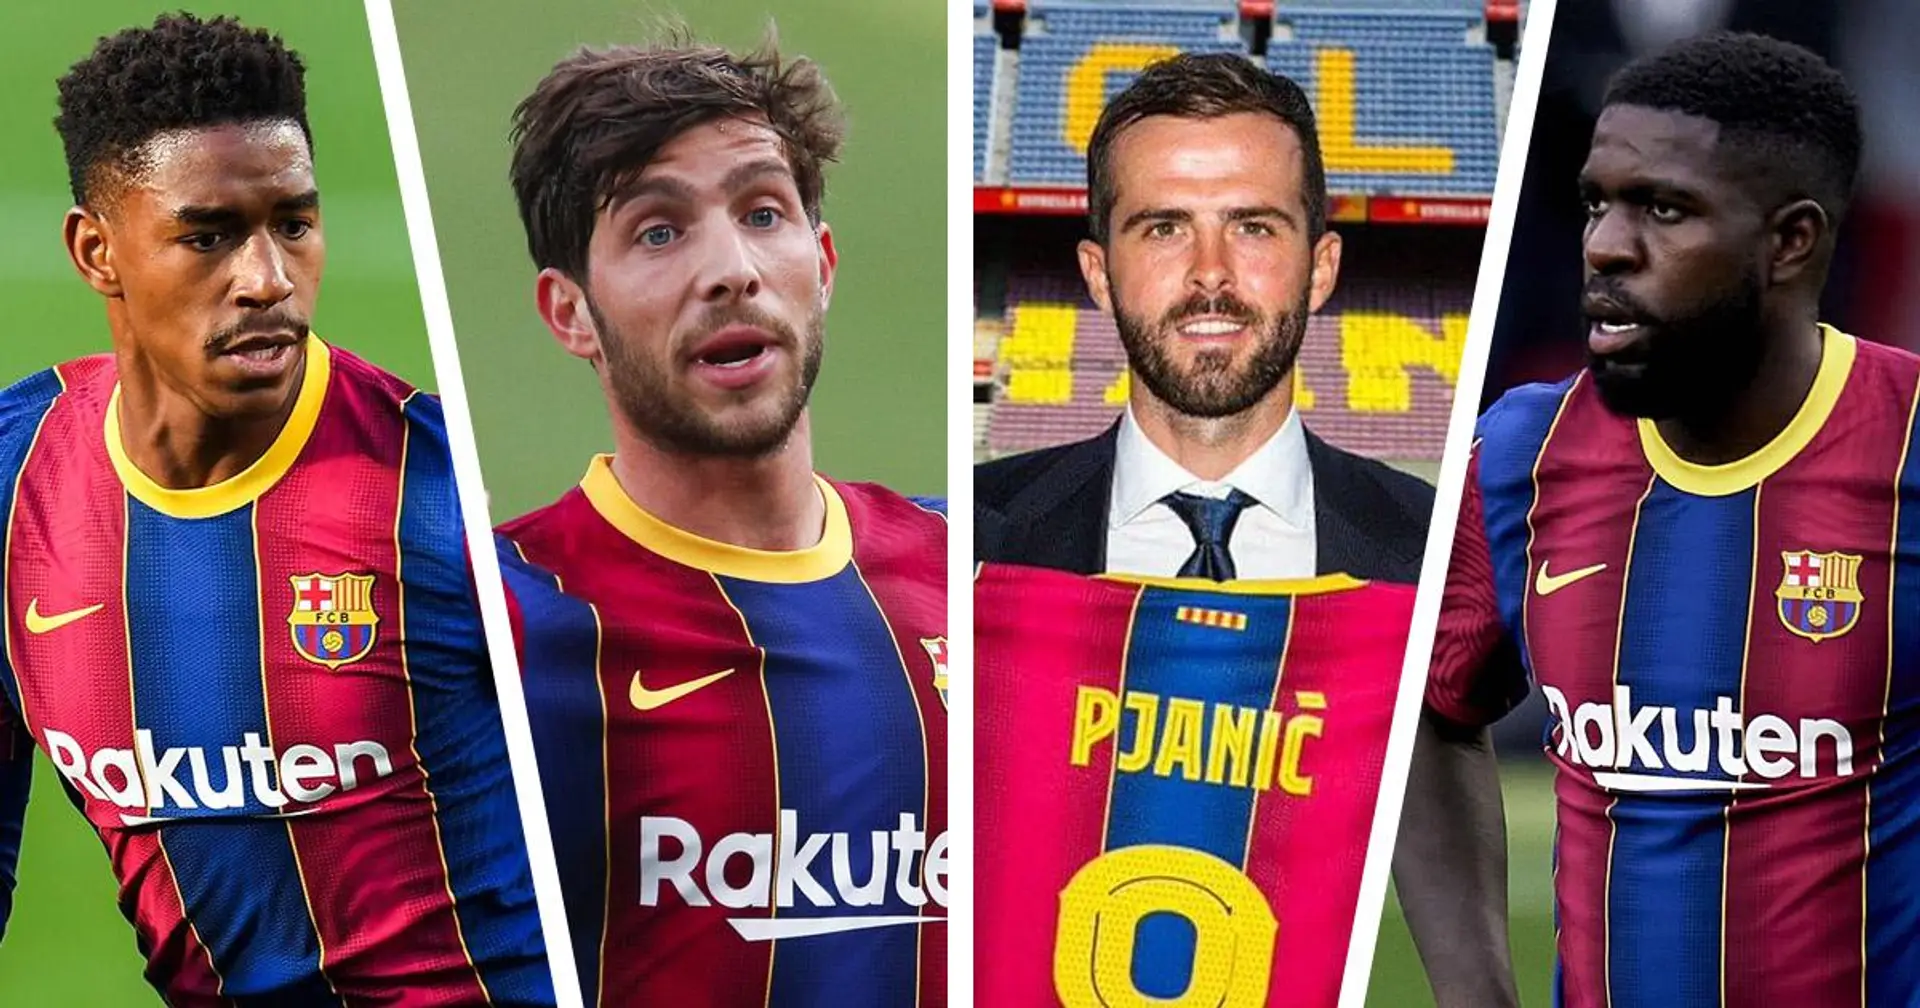 Revelado: lo que podría ahorrarse el Barça en salarios si vendiera jugadores en verano